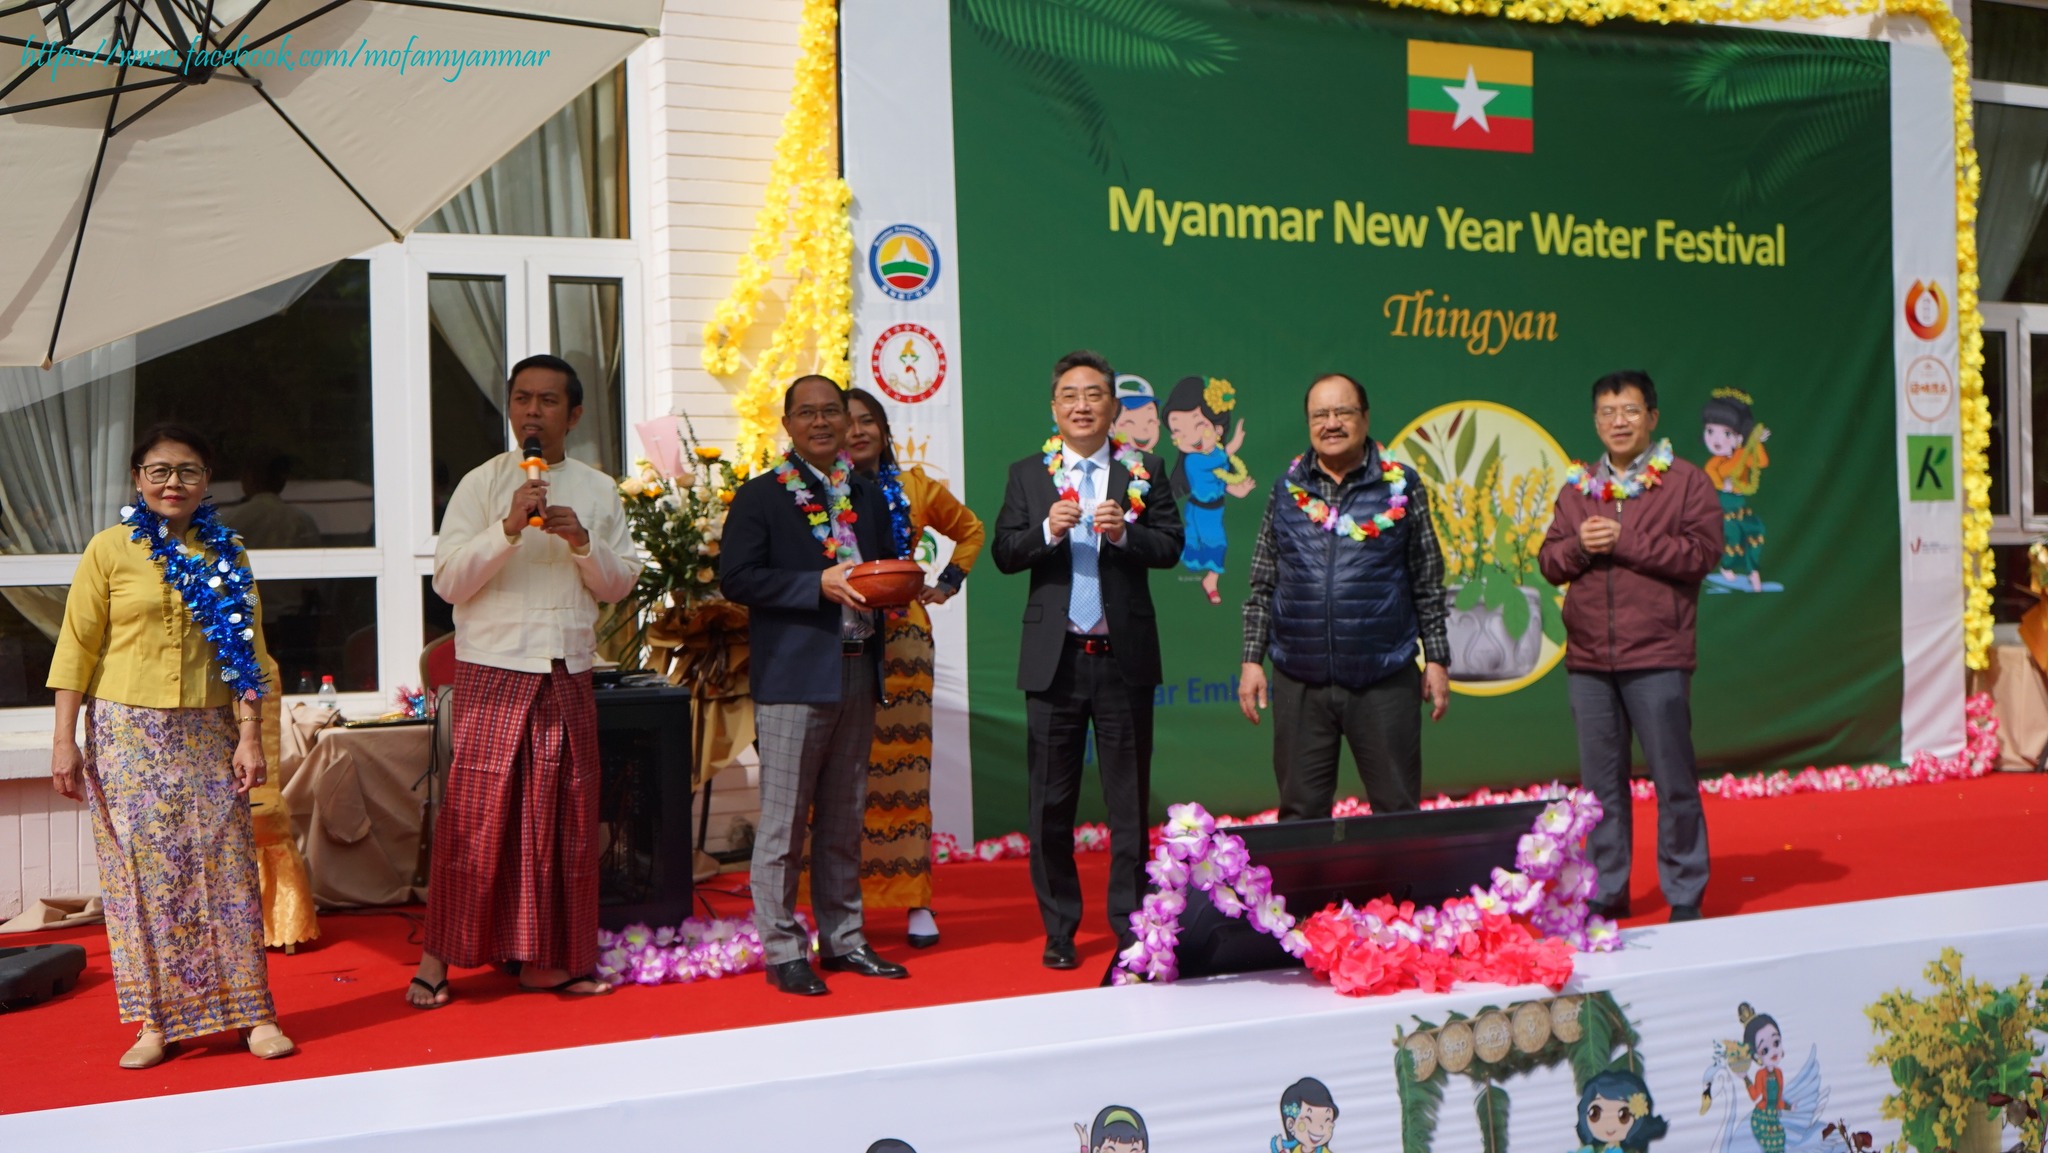 ပေကျင်းမြို့ရှိ မြန်မာသံရုံး၌ မြန်မာ့ရိုးရာနှစ်သစ်ကူးမဟာသင်္ကြန်ပွဲတော် ကျင်းပ